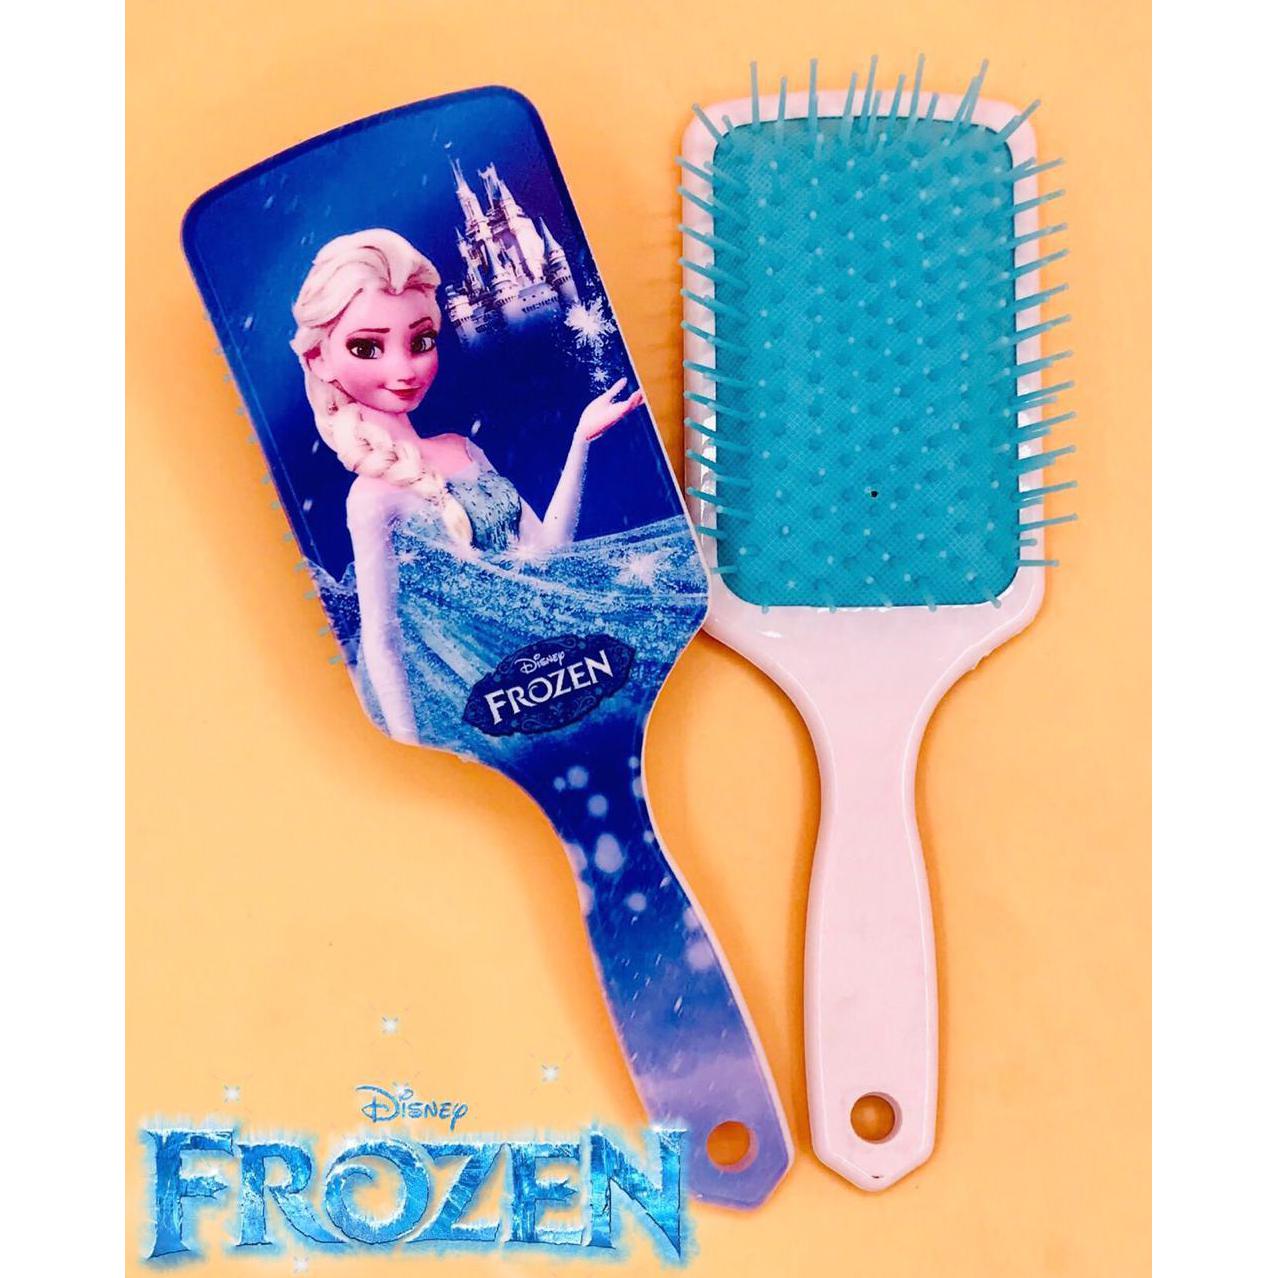 Cepillo para cabello Frozen ❄ - The Gift Shop Costa Rica